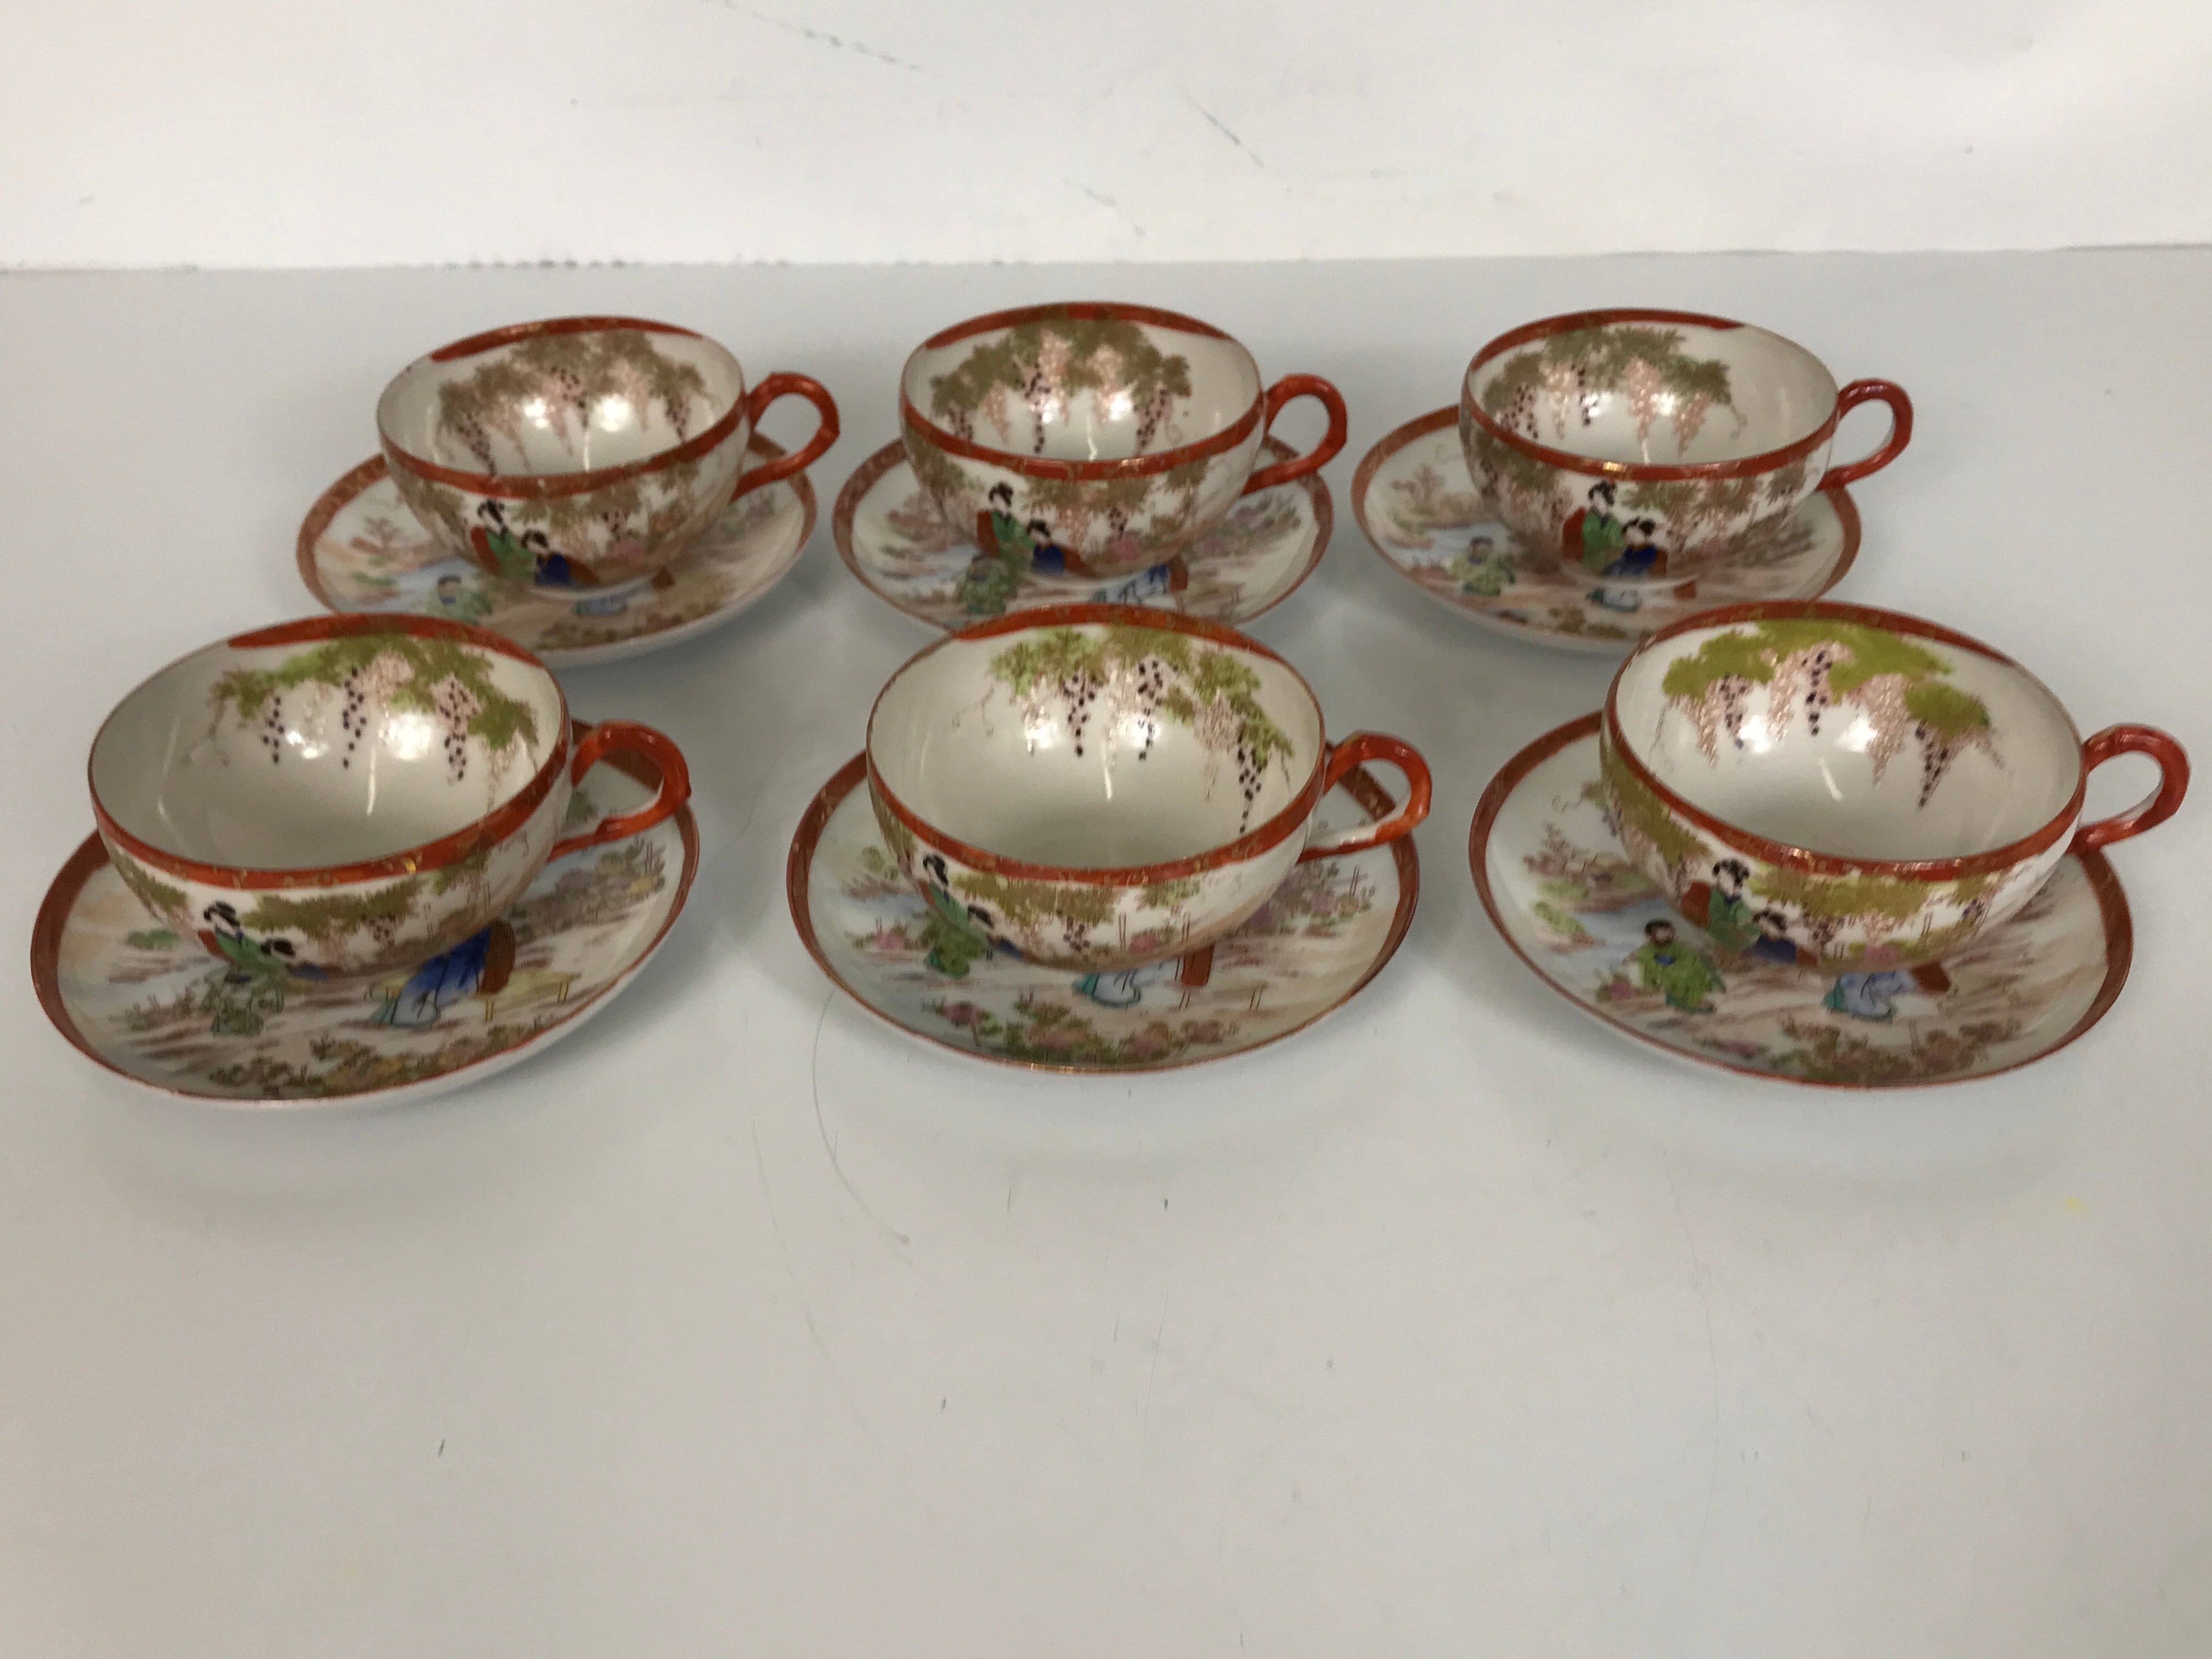 12 Piece Japanese Porcelain Tea Cup and Saucer Set